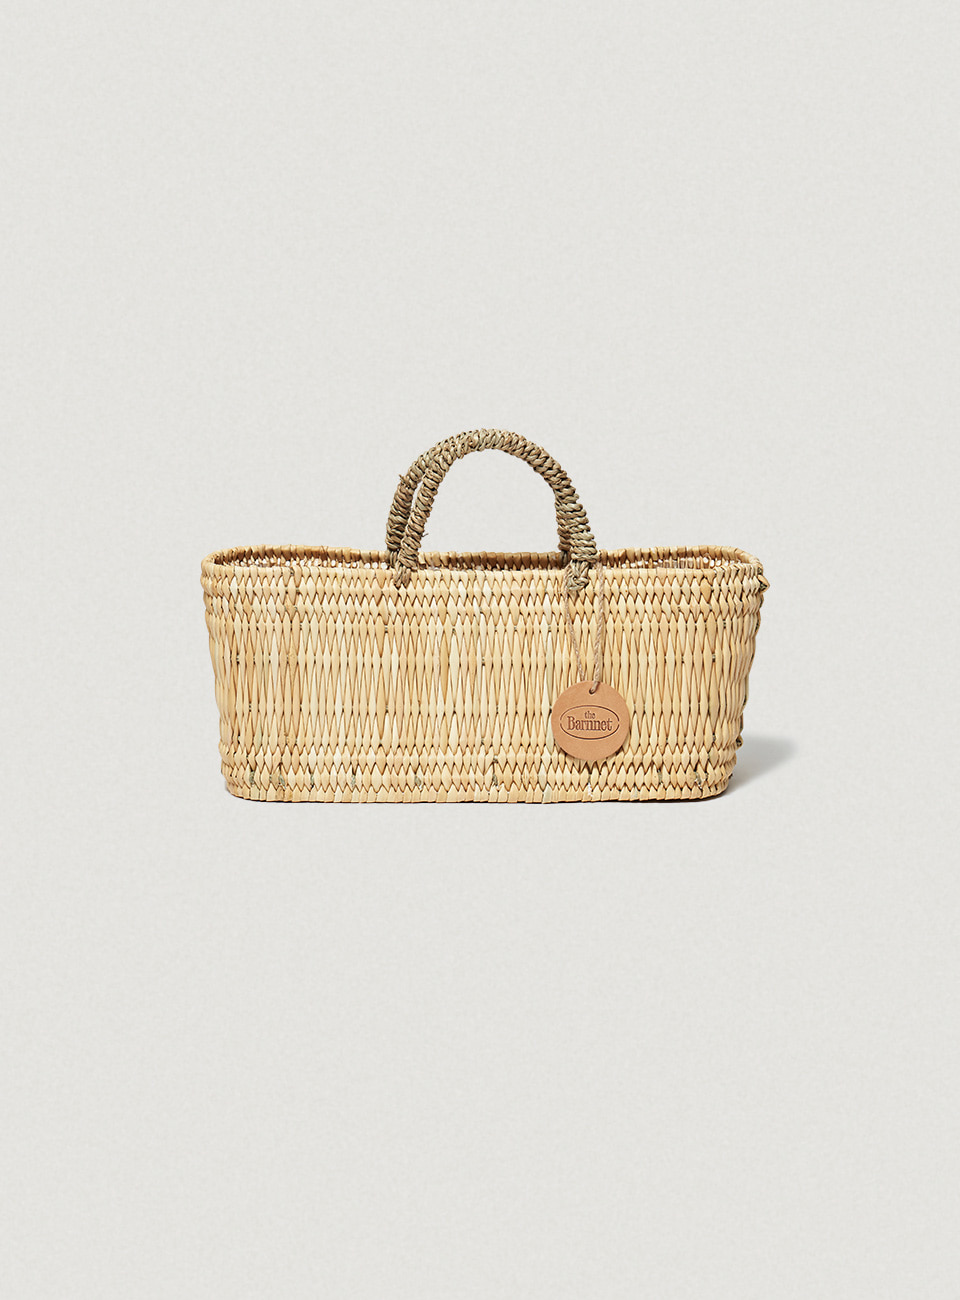 Reed Storage Baskets by BOHEMIA LTD.